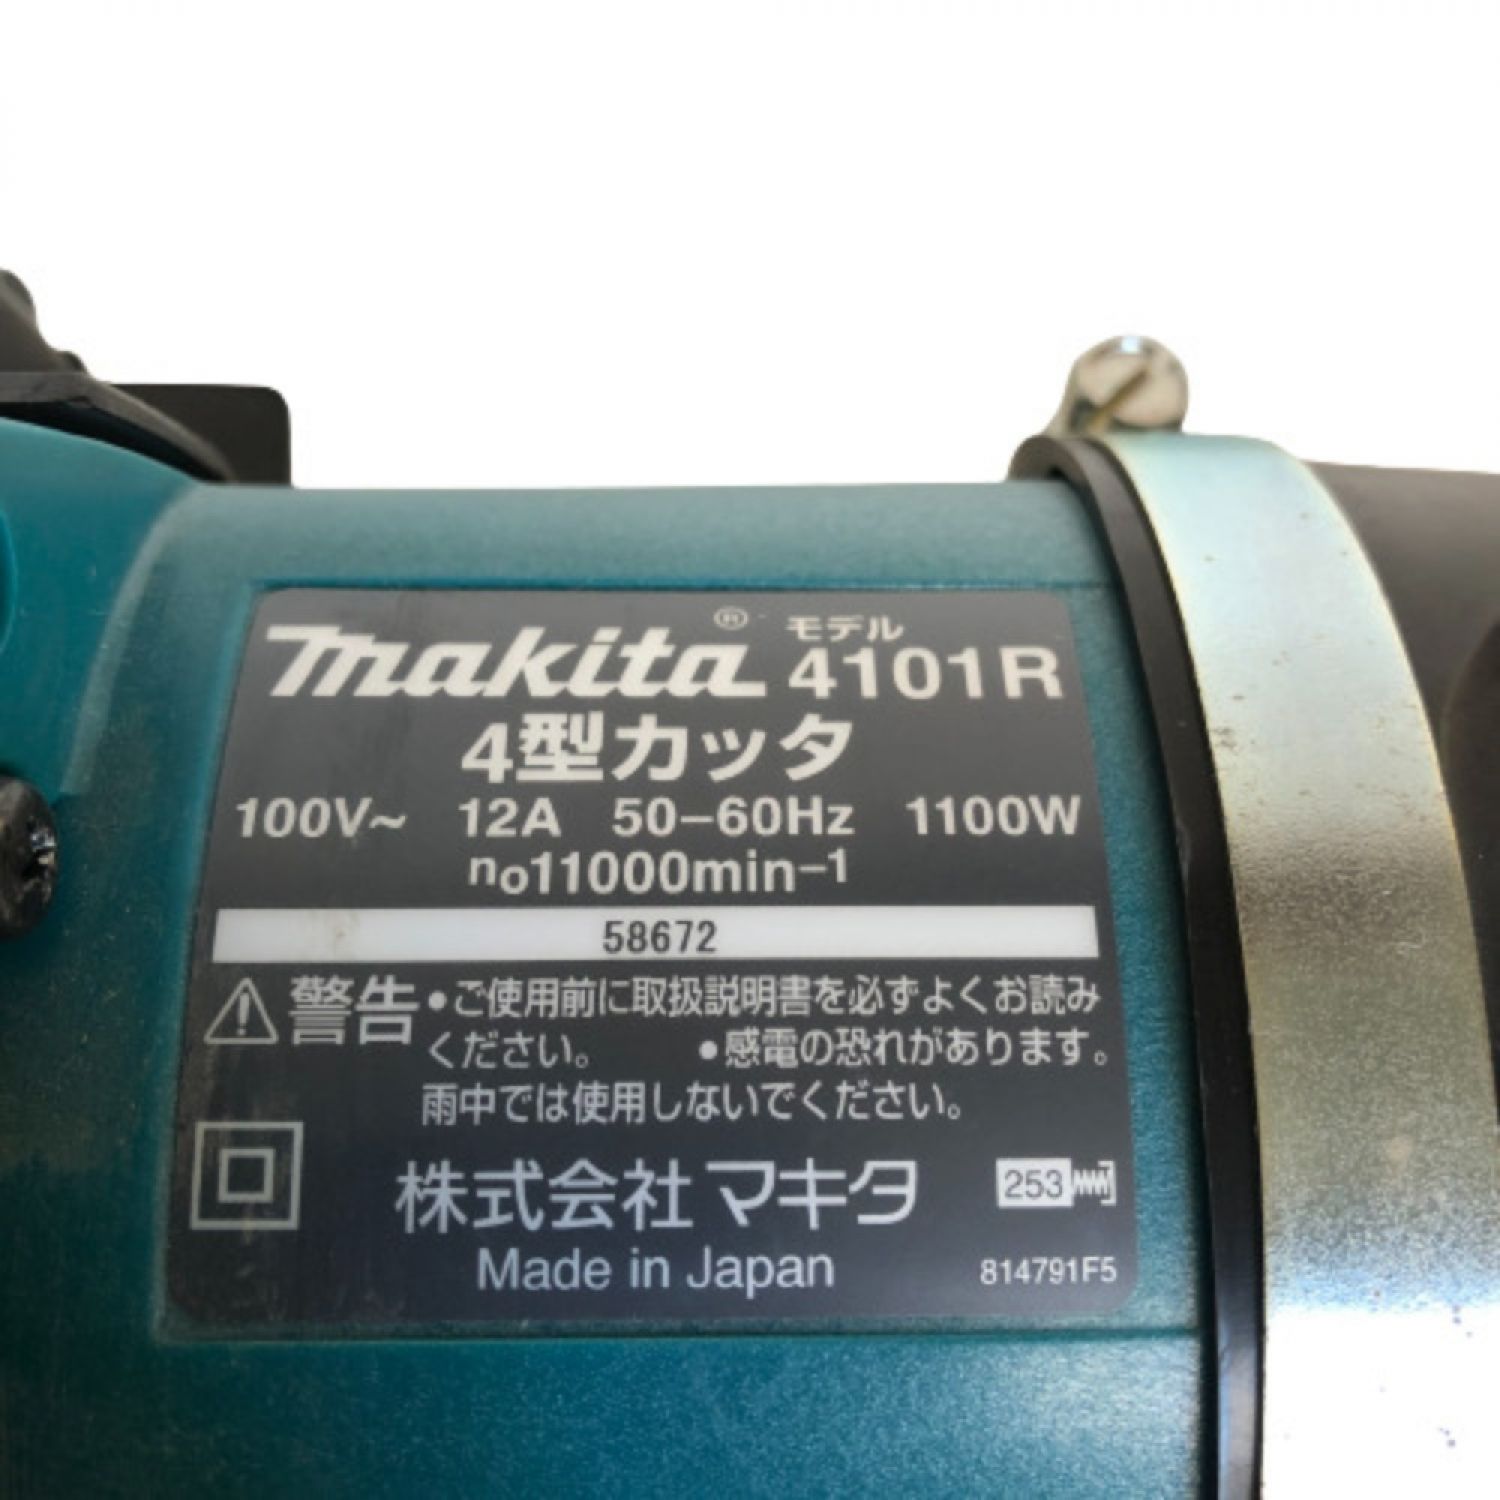 詰替え マキタ makita(マキタ):4型カッタ 4101R 電動工具 DIY 88381006712 4101R 